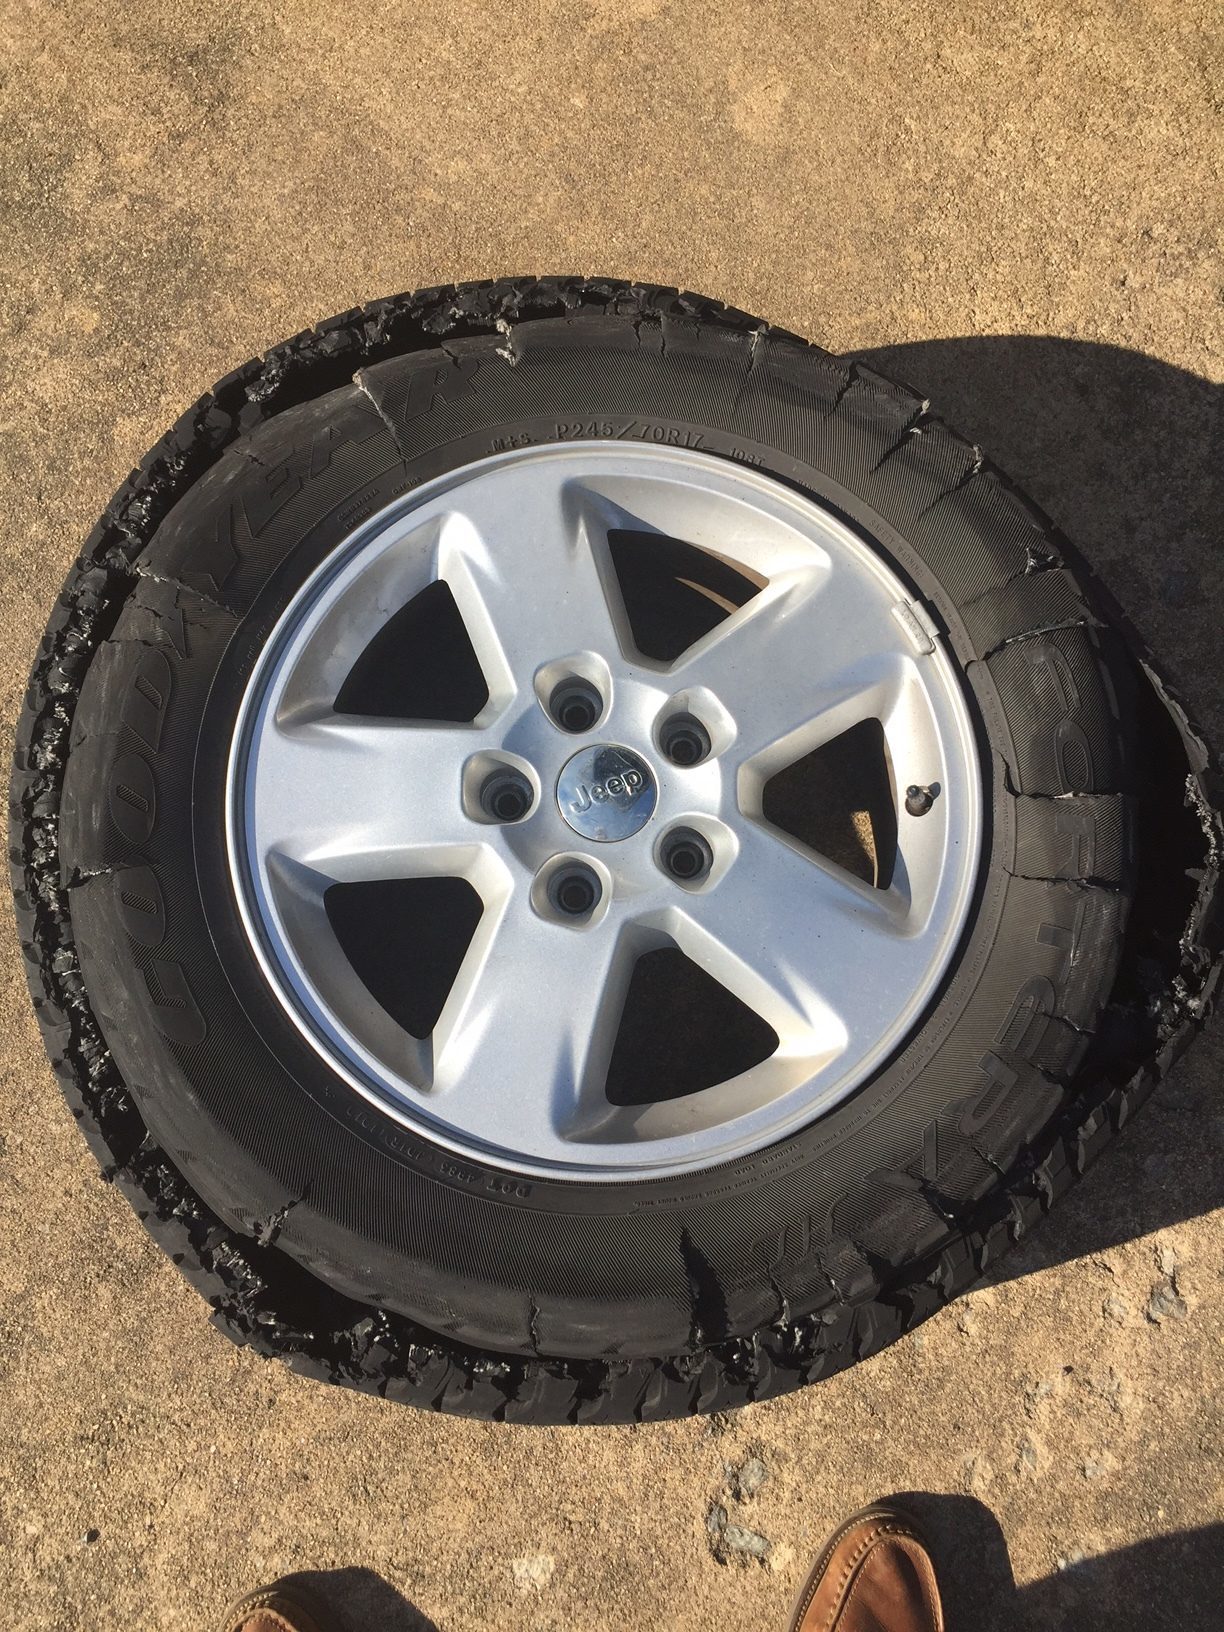 Have Bridgestone tires had any recent recalls?